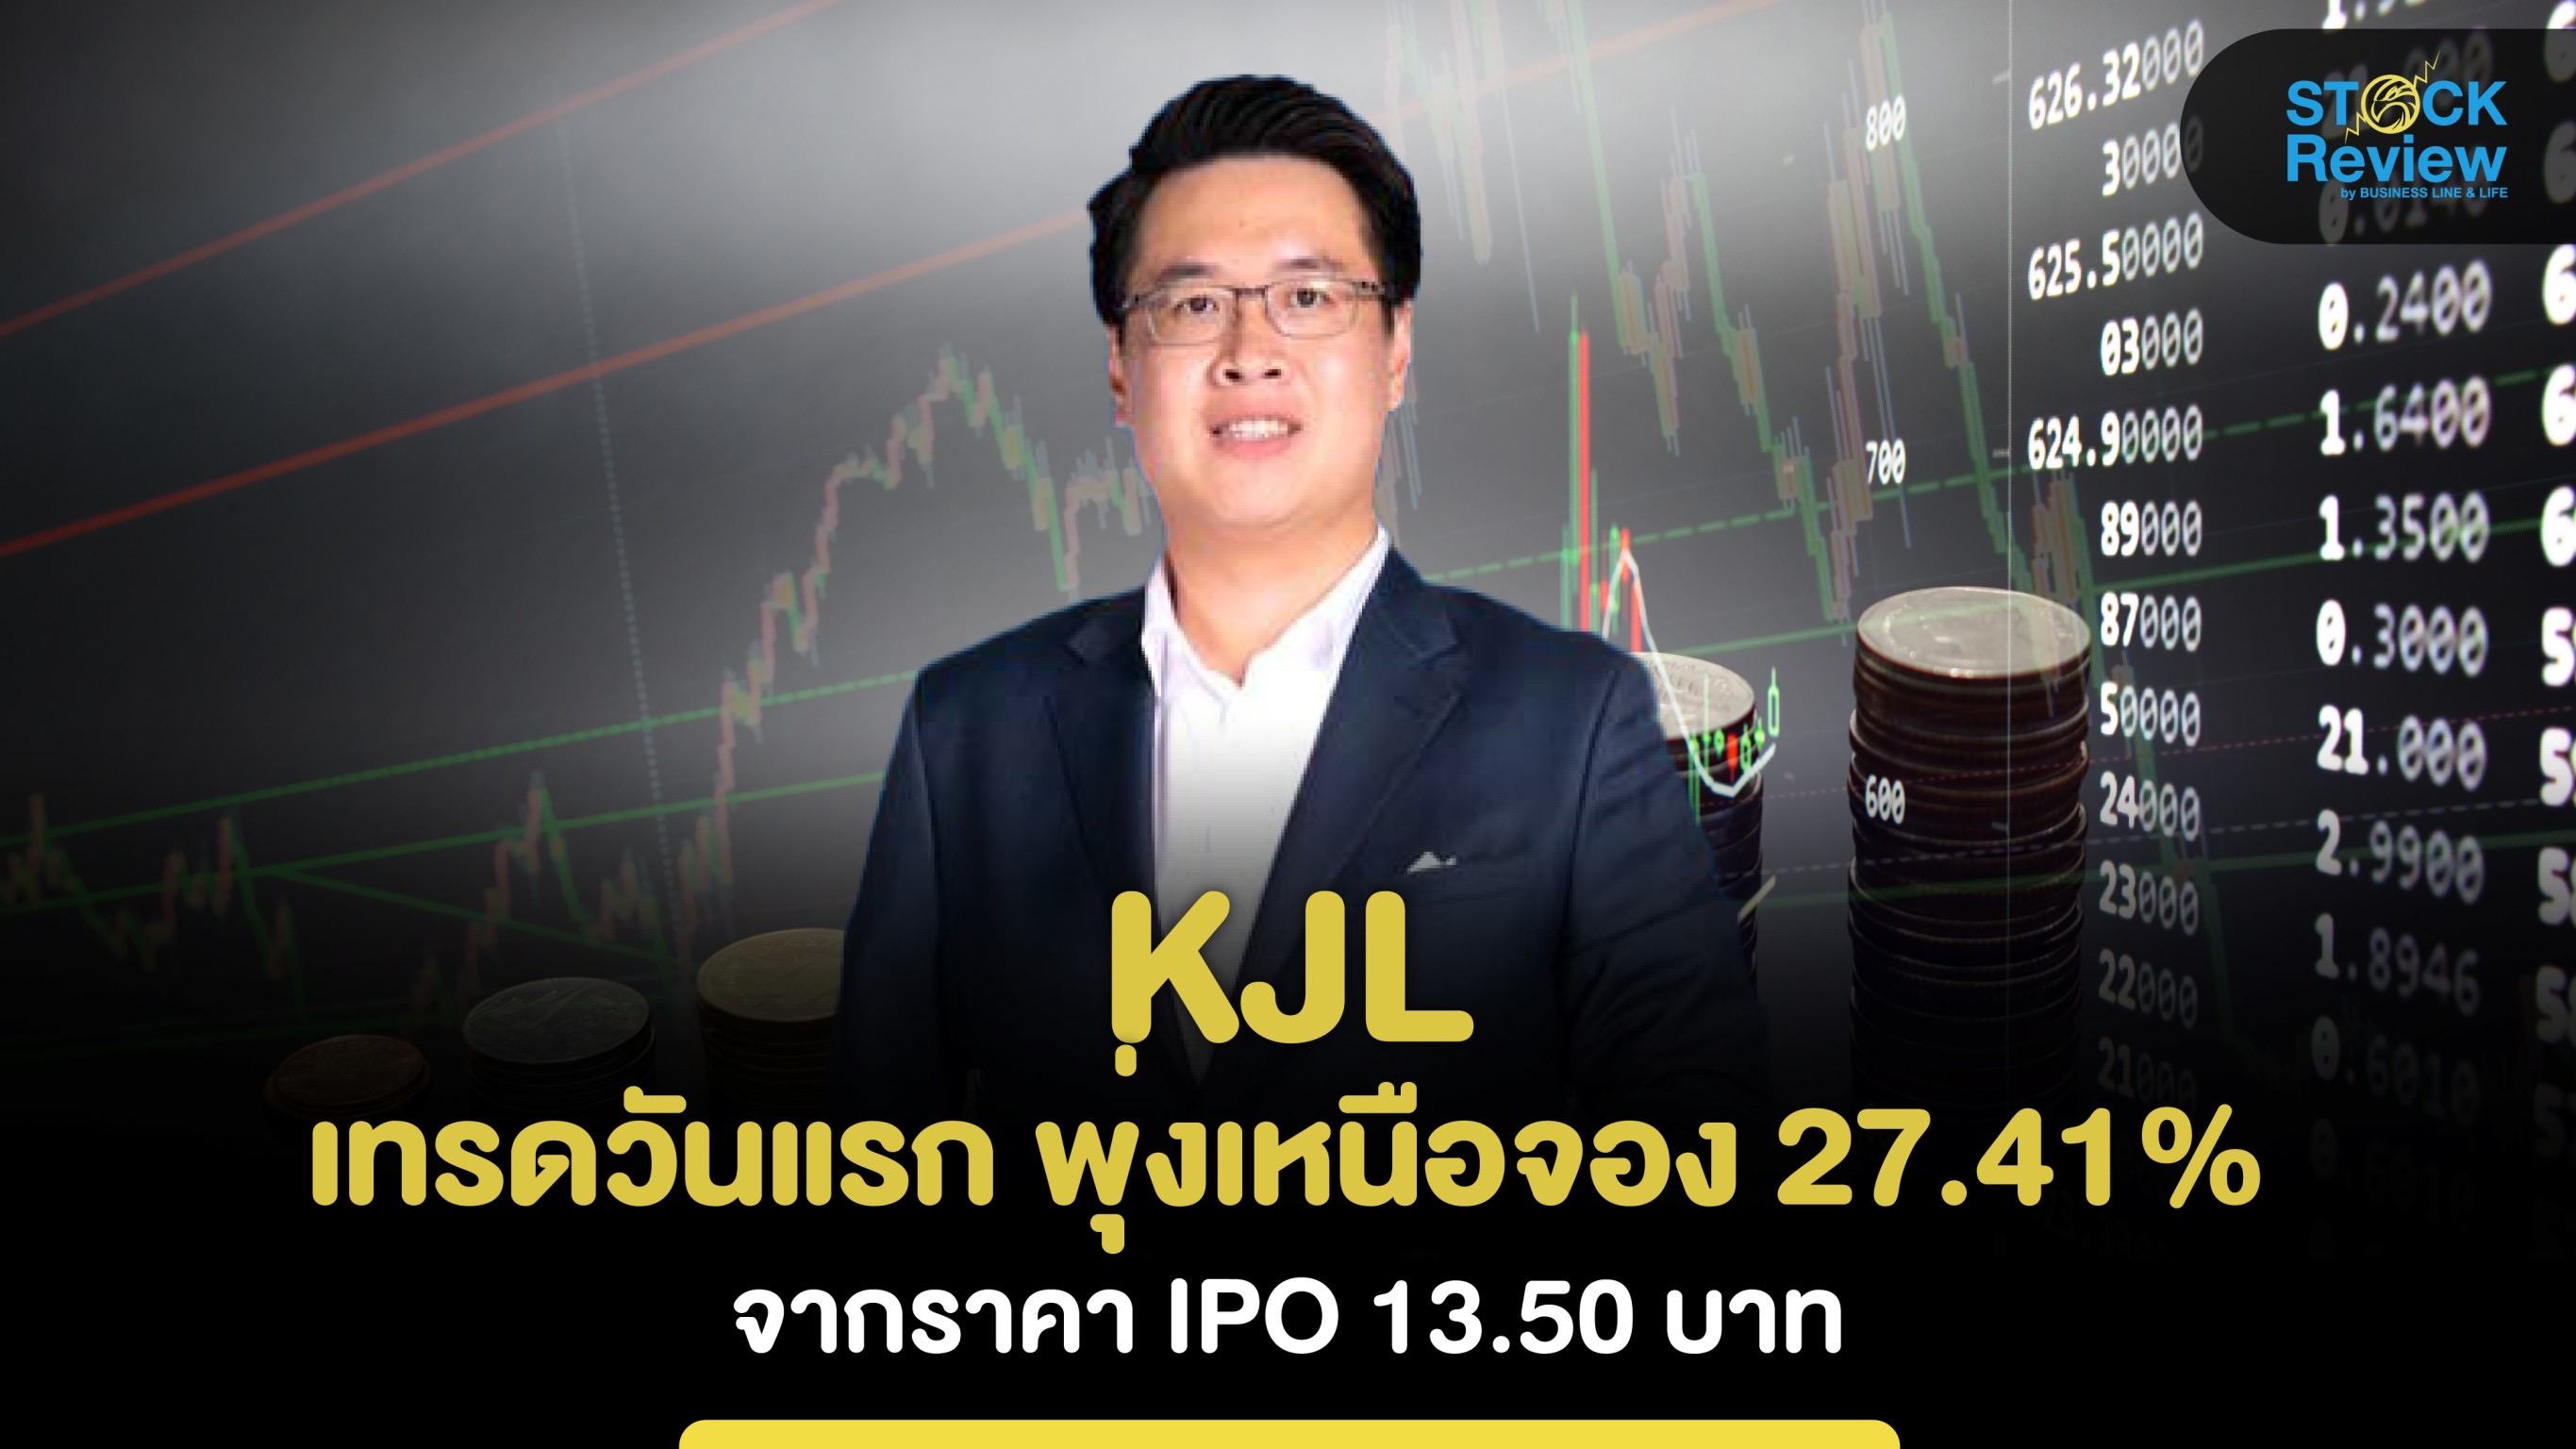 KJL เทรดวันแรก พุ่งเหนือจอง 27.41% จากราคา IPO 13.50 บาท